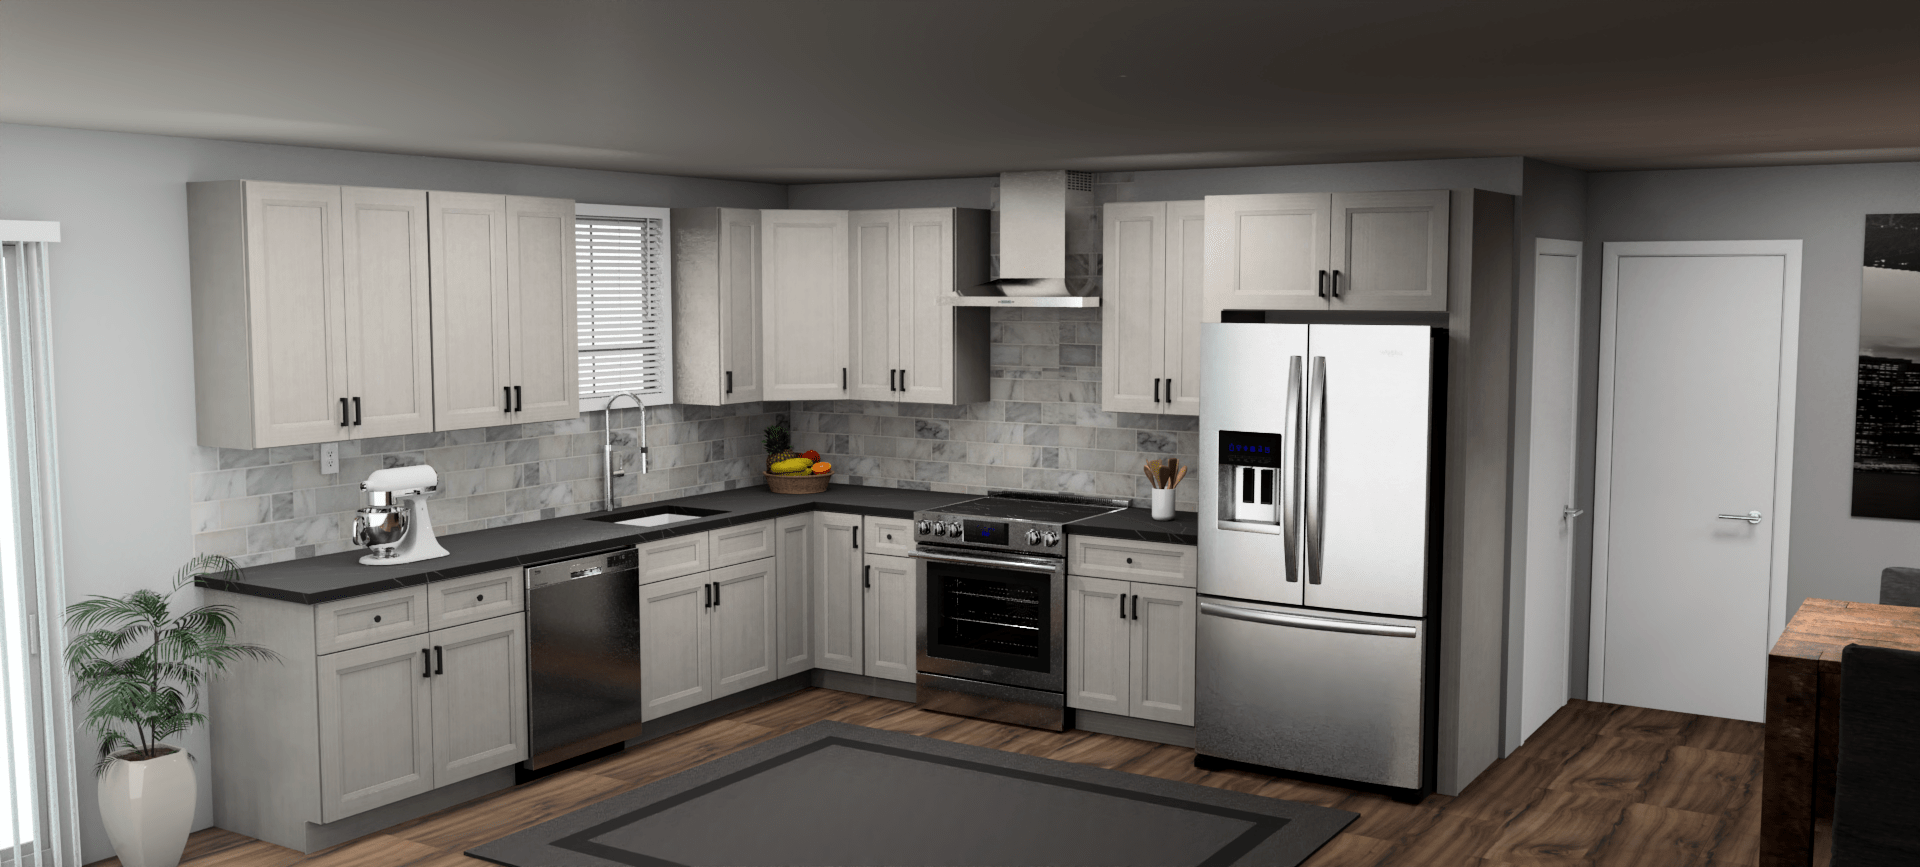 Fabuwood Allure Onyx Horizon 11 x 12 L Shaped Kitchen Main Layout Photo